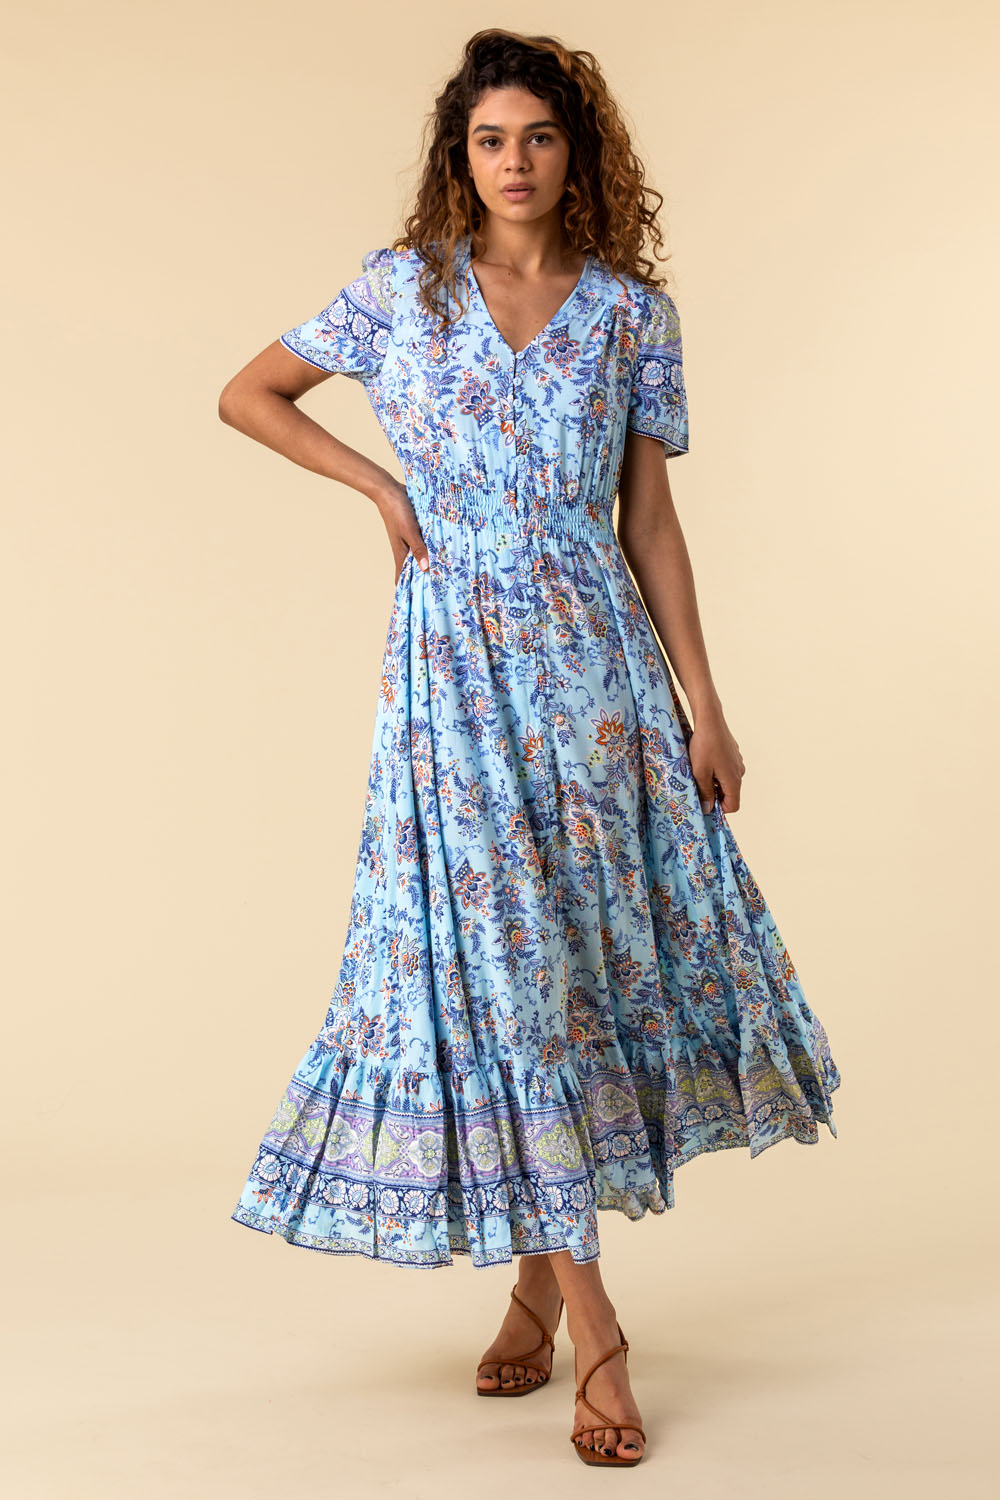 Roman Originals Women's Blue Floral Placement Maxi Dress Sizes 10-20 